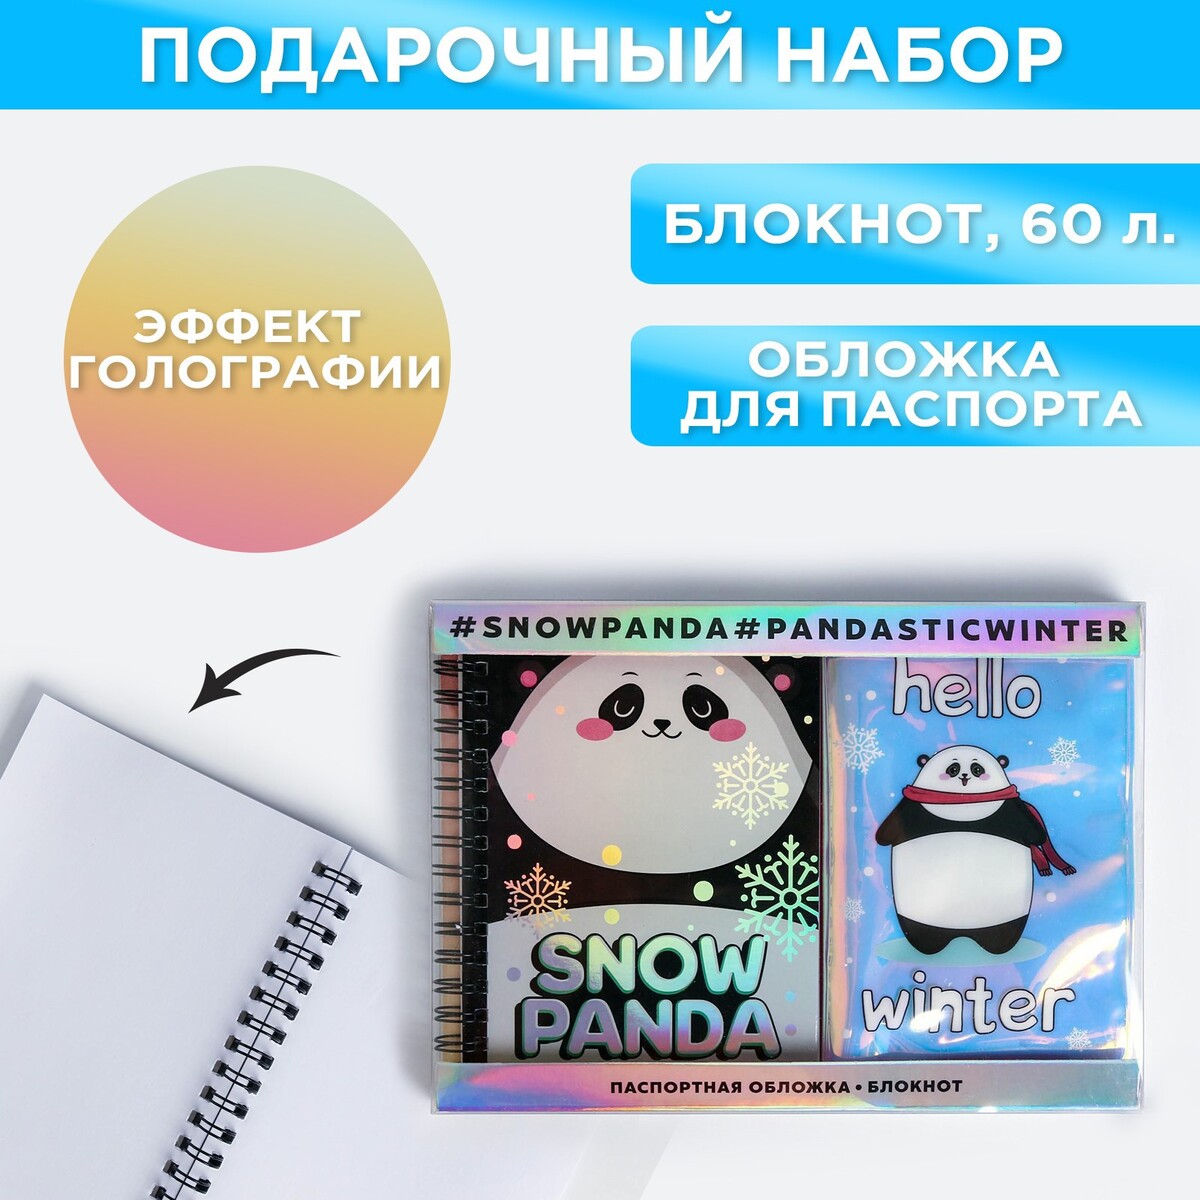 Подарочный набор: голографический блокнот и обложка snow panda набор коньки детские раздвижные snow cat с роликовой платформой защита р 26 29